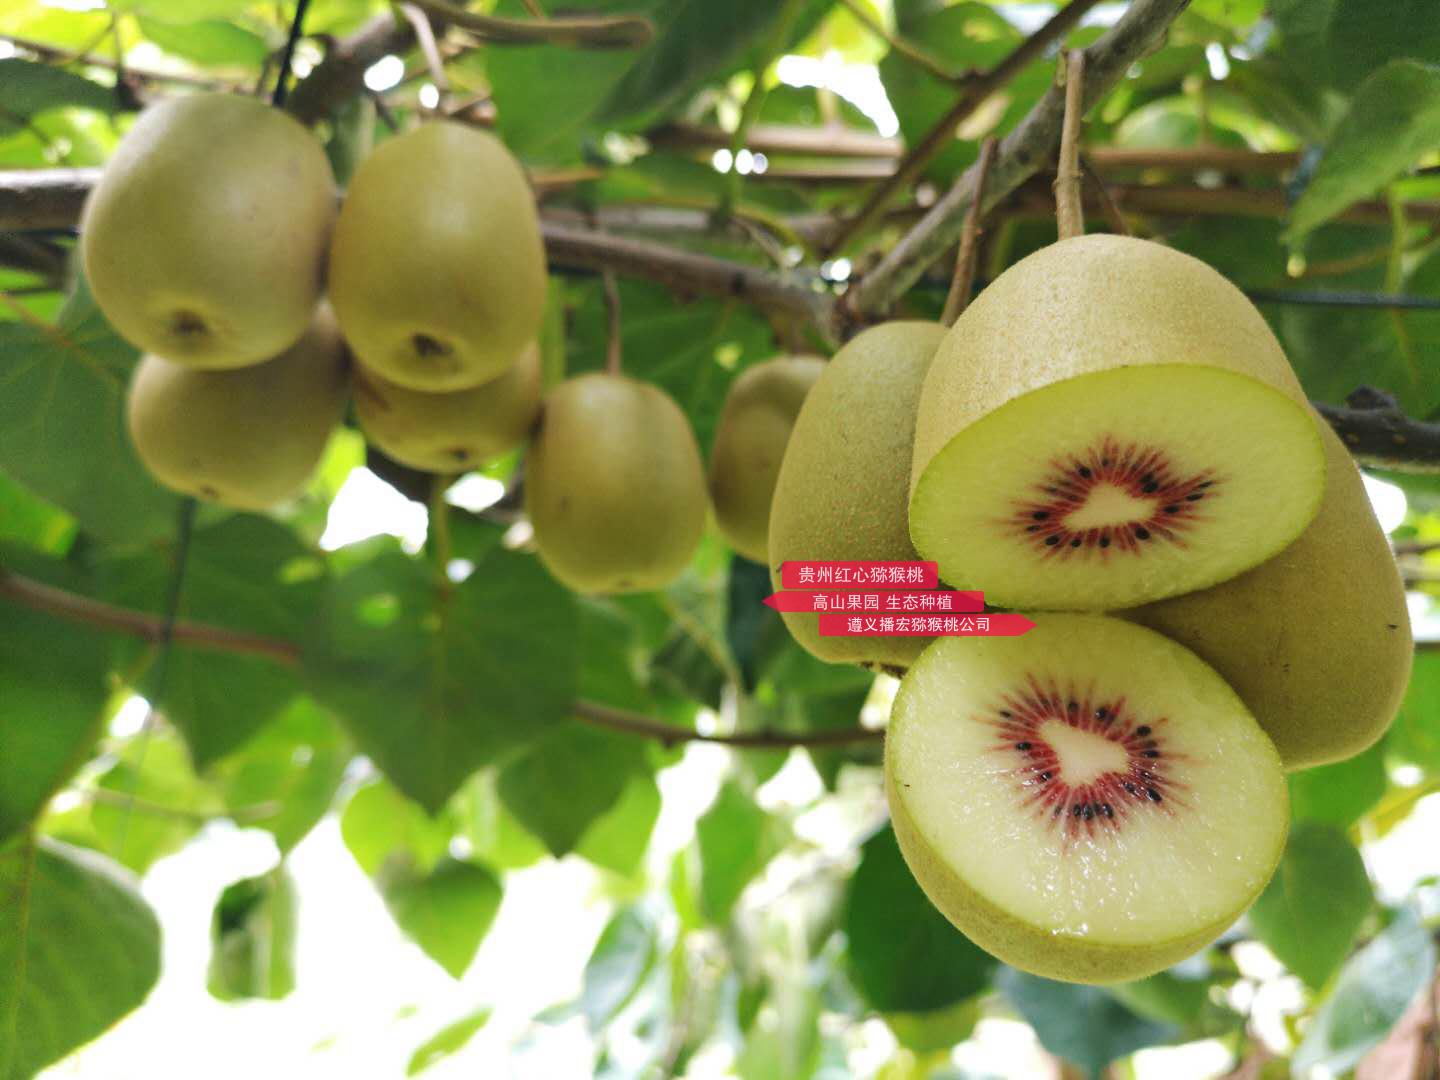 介绍贵州当地东红猕猴桃产量长期在低水平所以价格高